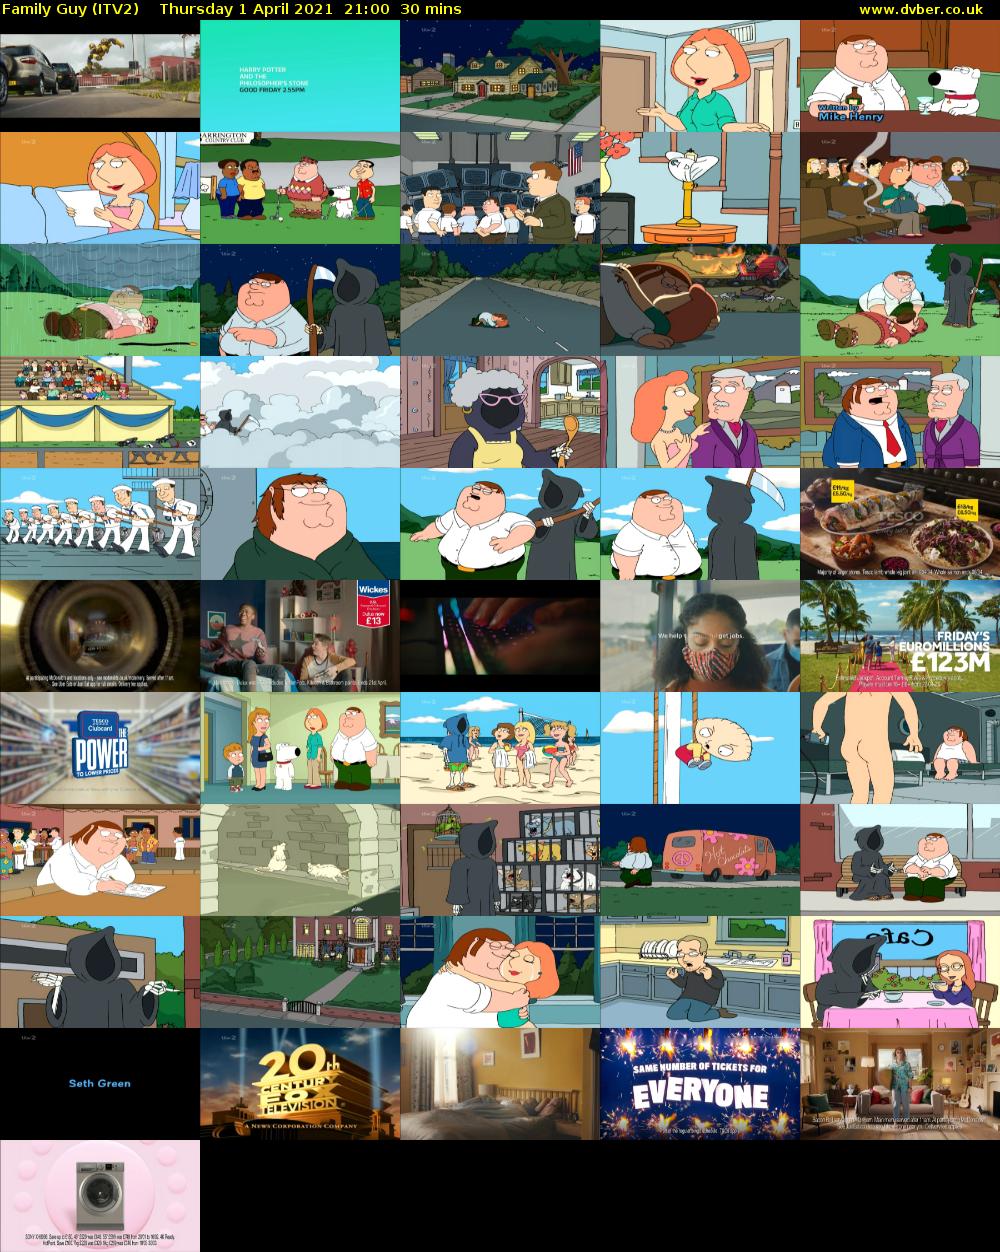 Family Guy (ITV2) Thursday 1 April 2021 21:00 - 21:30